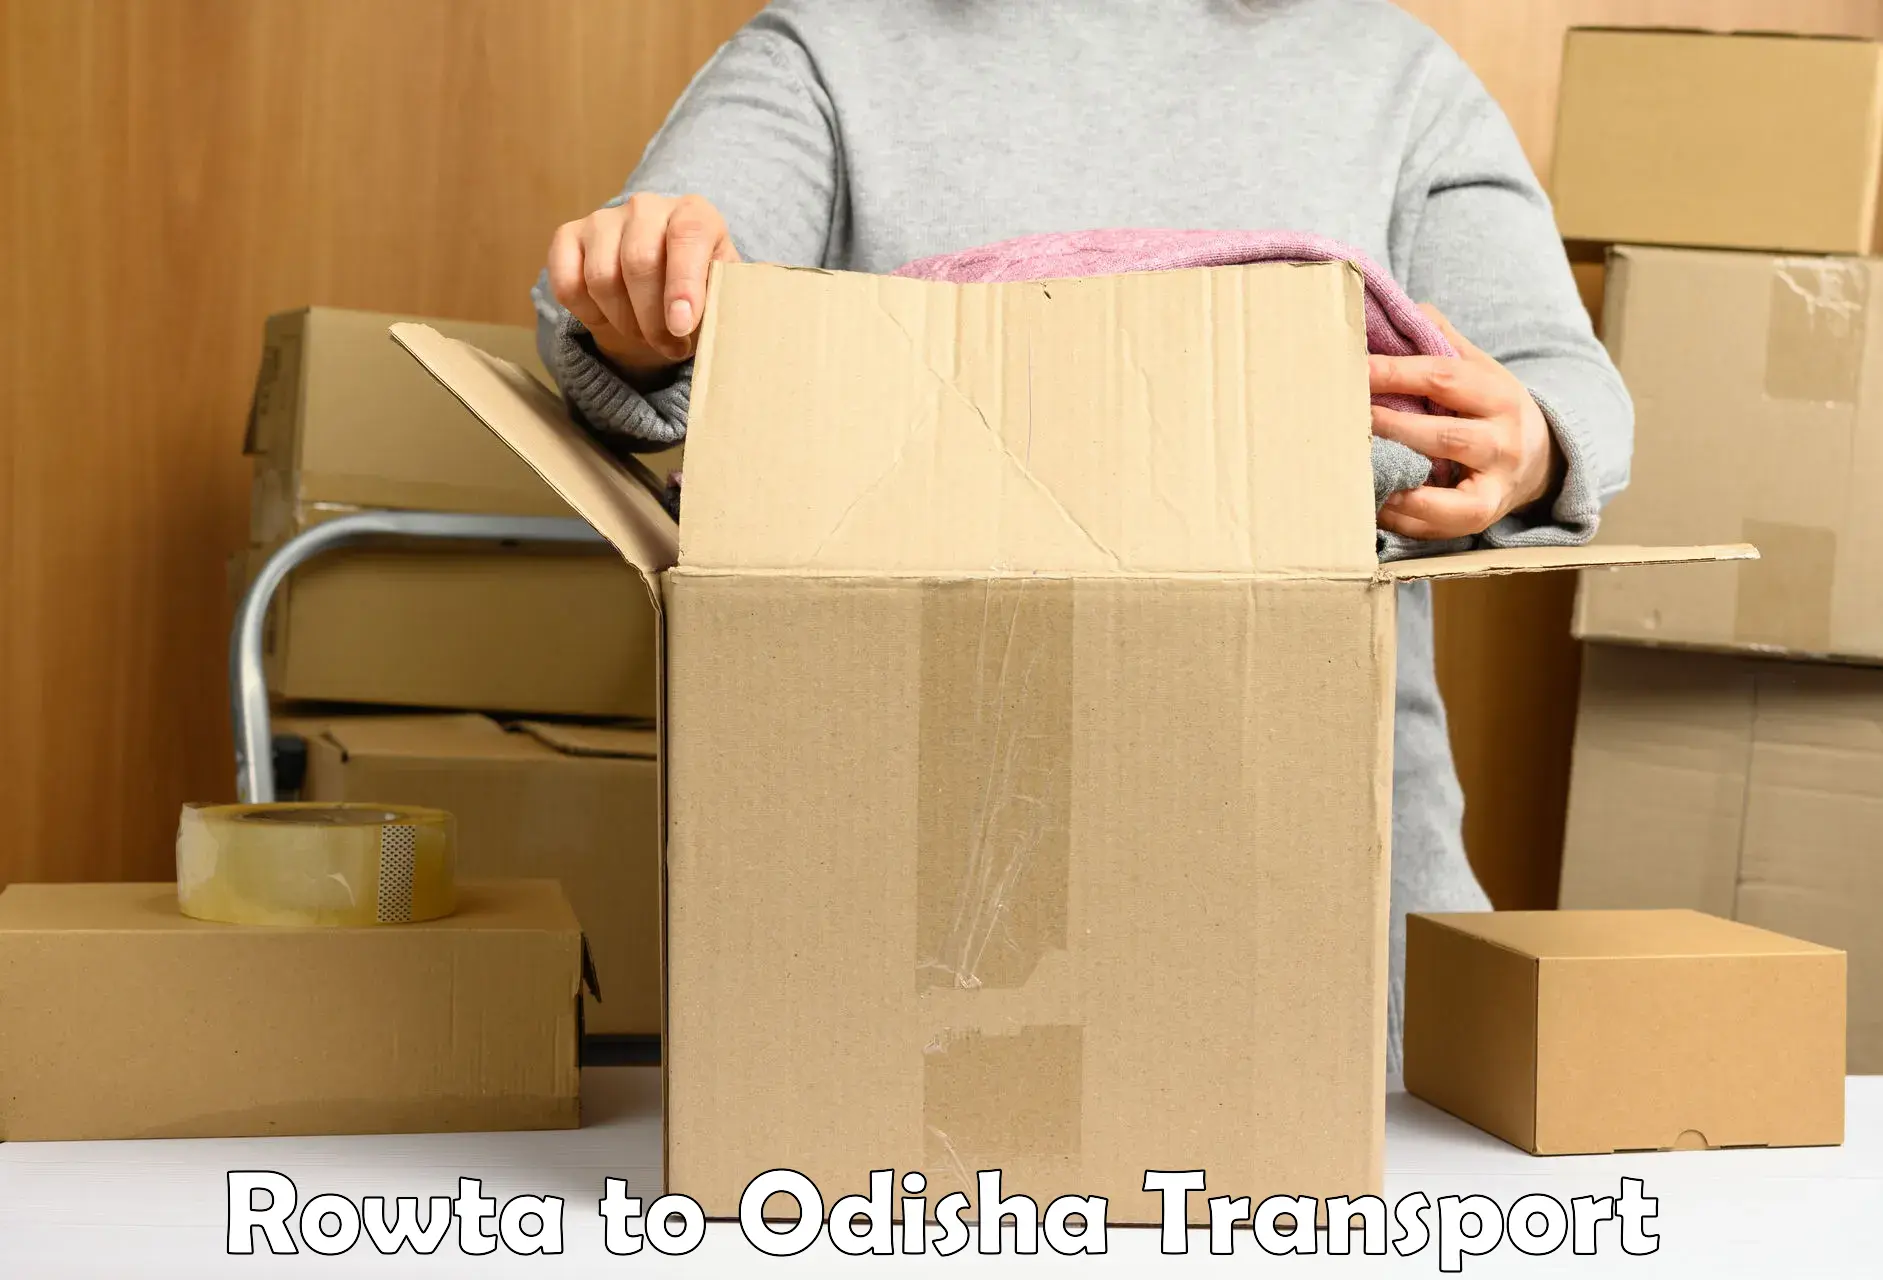 Daily transport service Rowta to Joda